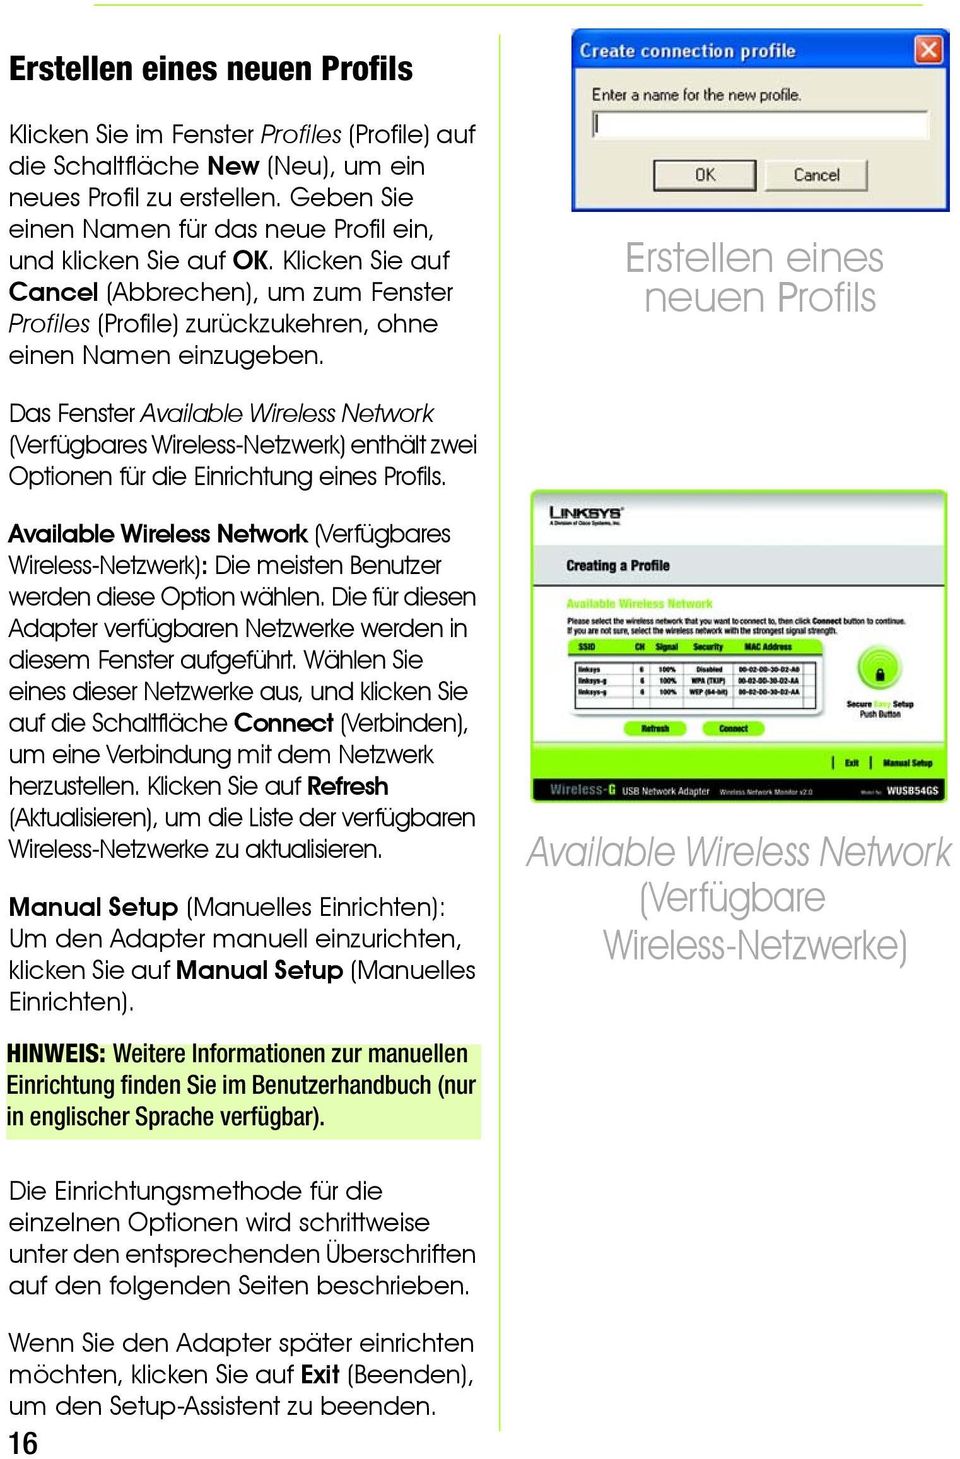 Erstellen eines neuen Profils Das Fenster Available Wireless Network (Verfügbares Wireless-Netzwerk) enthält zwei Optionen für die Einrichtung eines Profils.